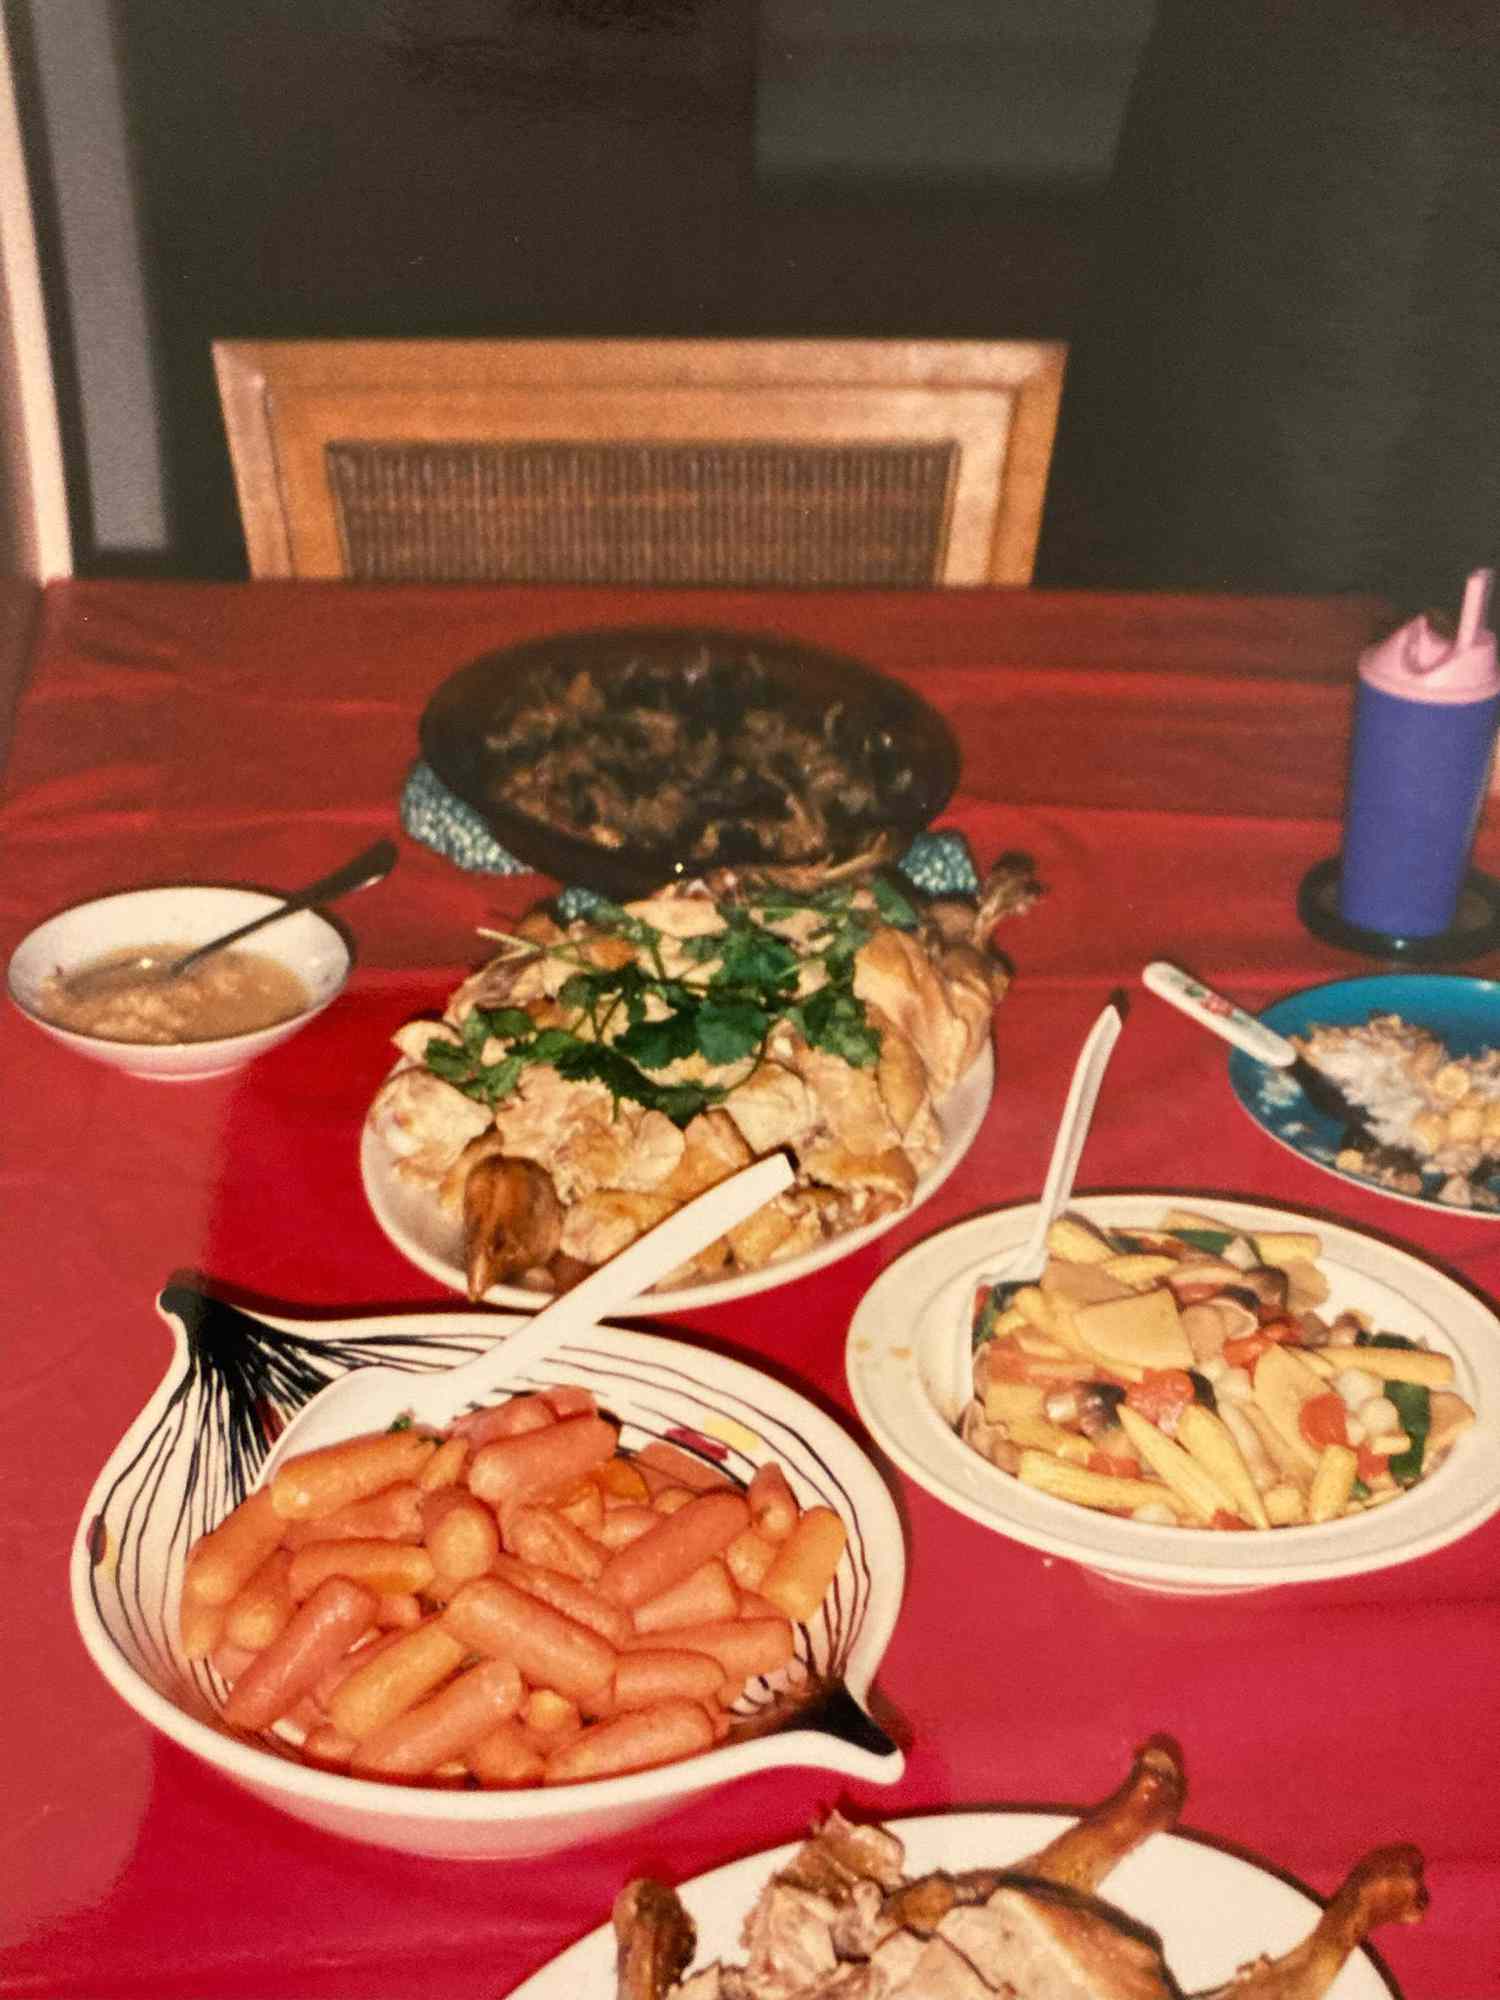 Una foto franca de la comida en la mesa